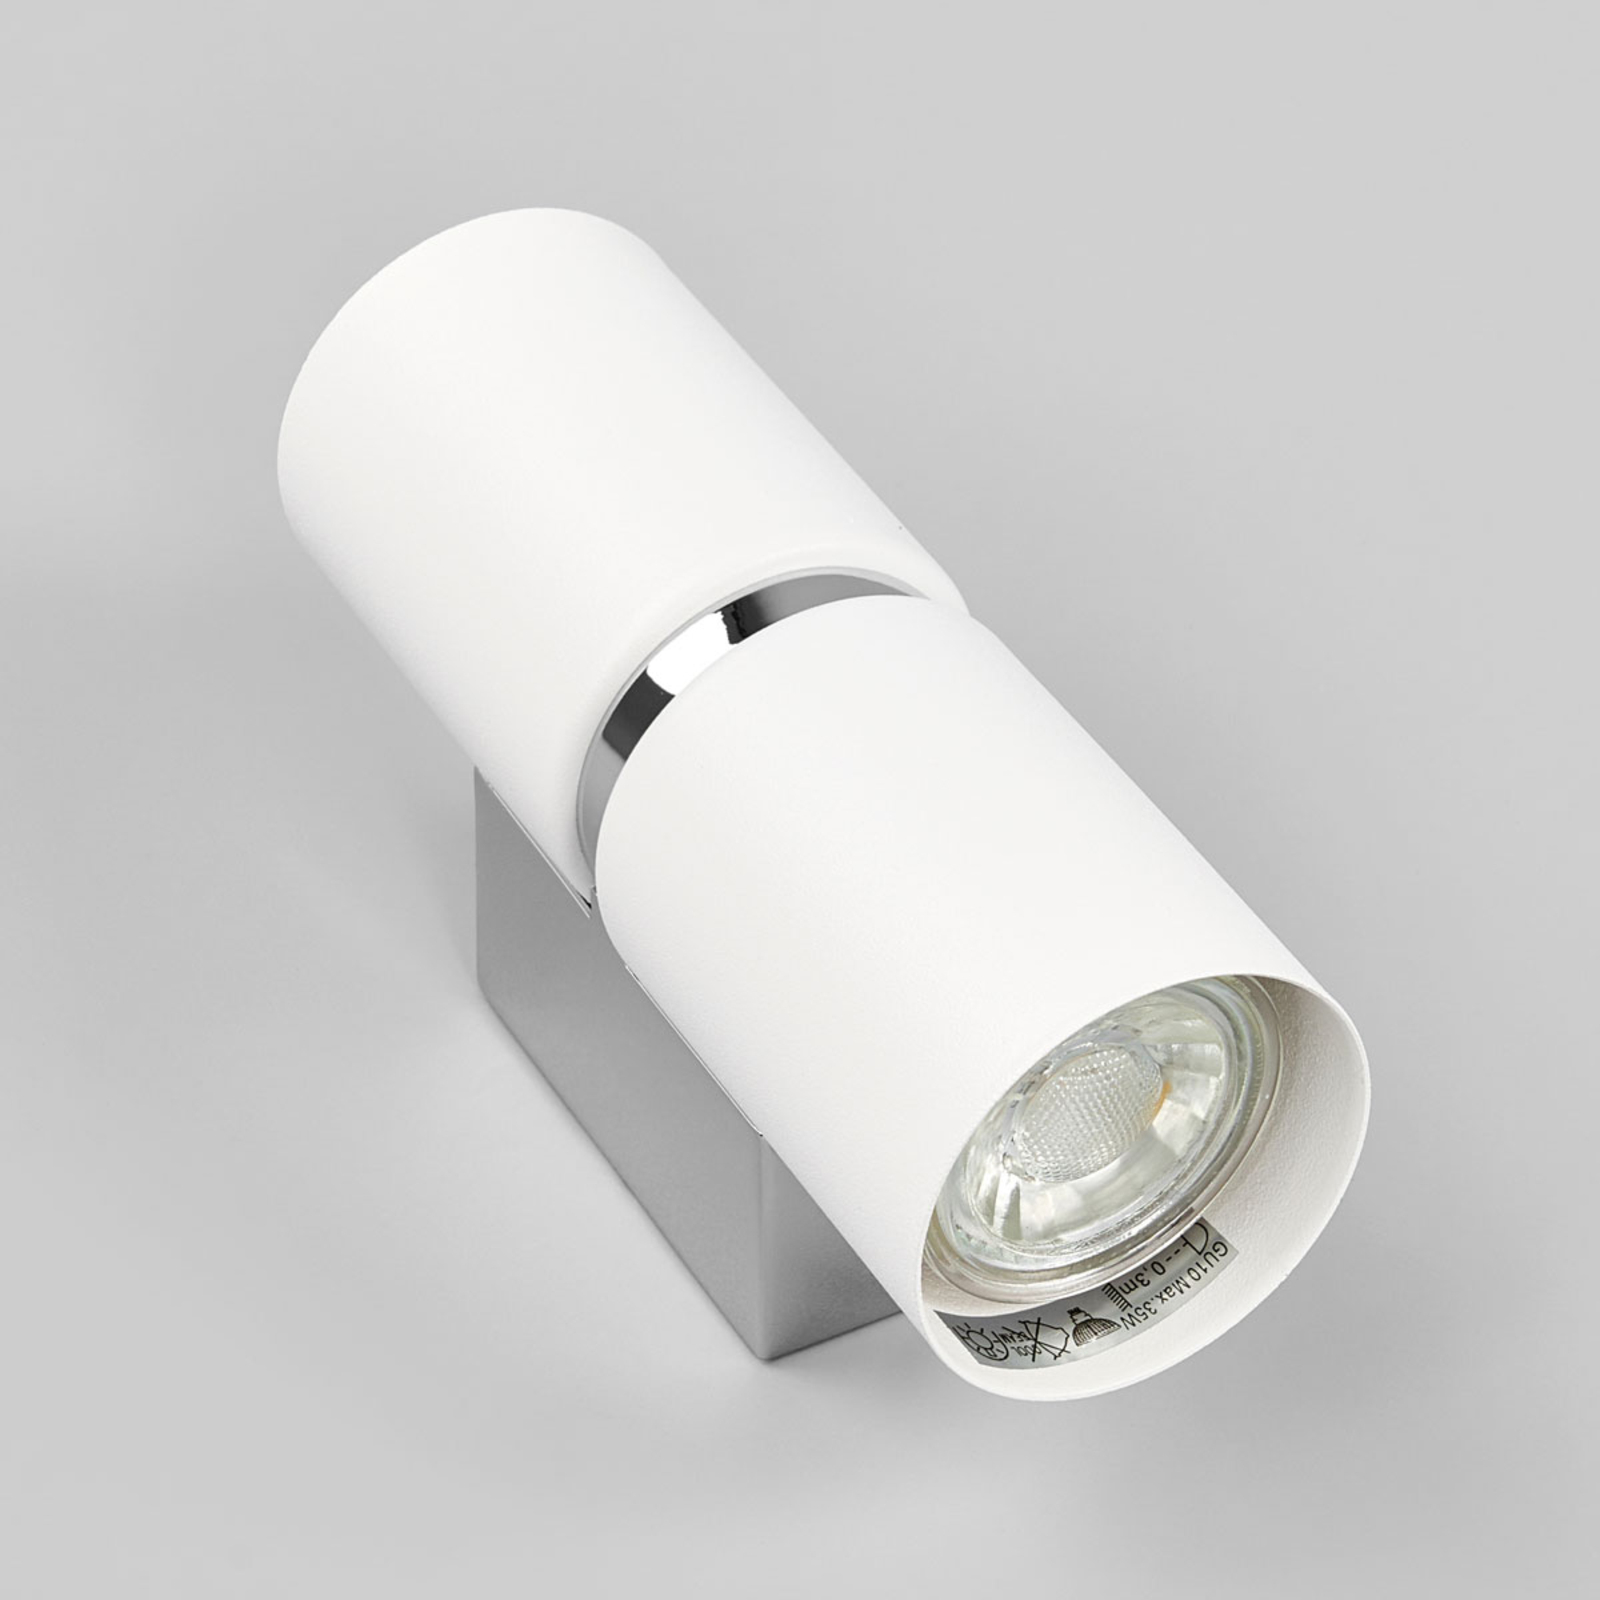 LED-vägglampa Passa, 2 lampor, rund, vit